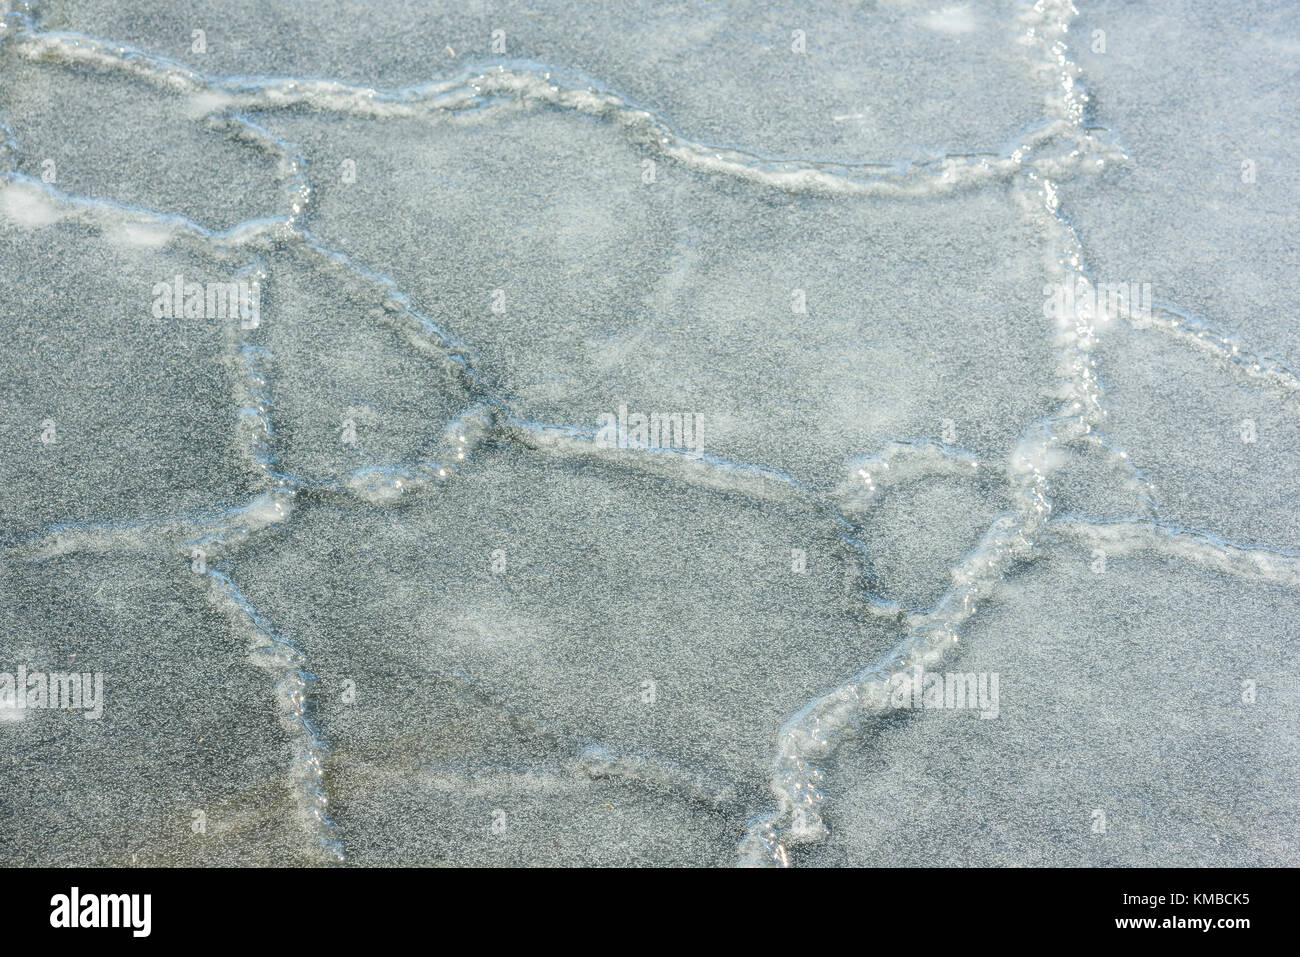 Rotto il ghiaccio fogli hanno ricongelati e formata una grande lastra di ghiaccio un pattern con cuciture e le piccole bolle. Foto Stock